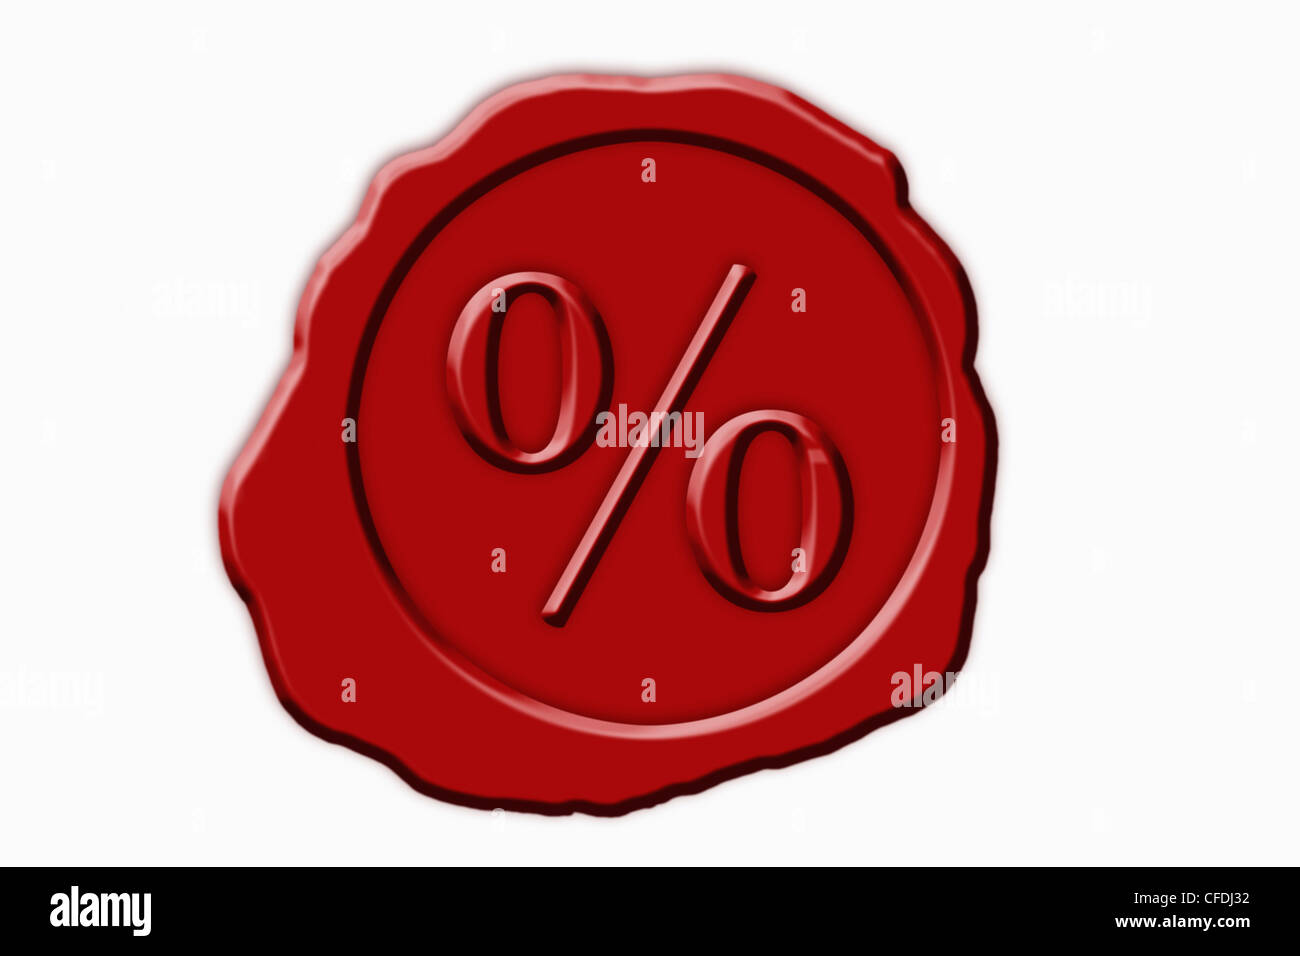 Dettaglio foto di un sigillo rosso con un simbolo di percentuale in medio Foto Stock